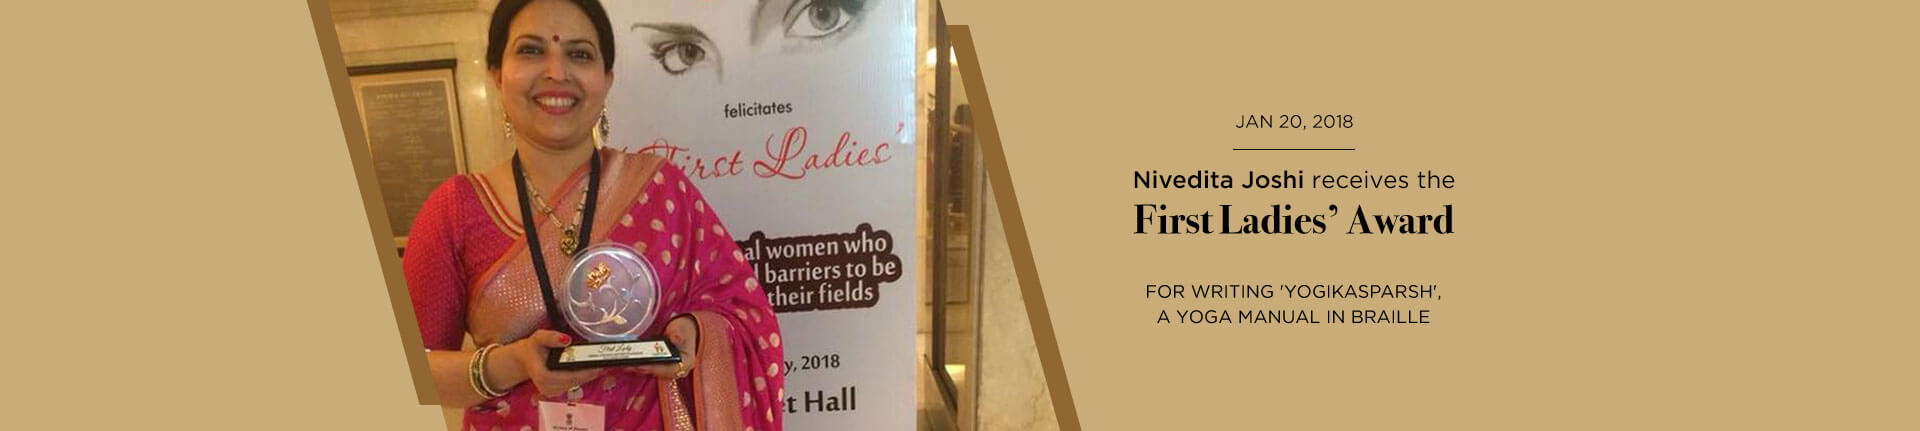 First Ladies Award to Nivedita Joshi